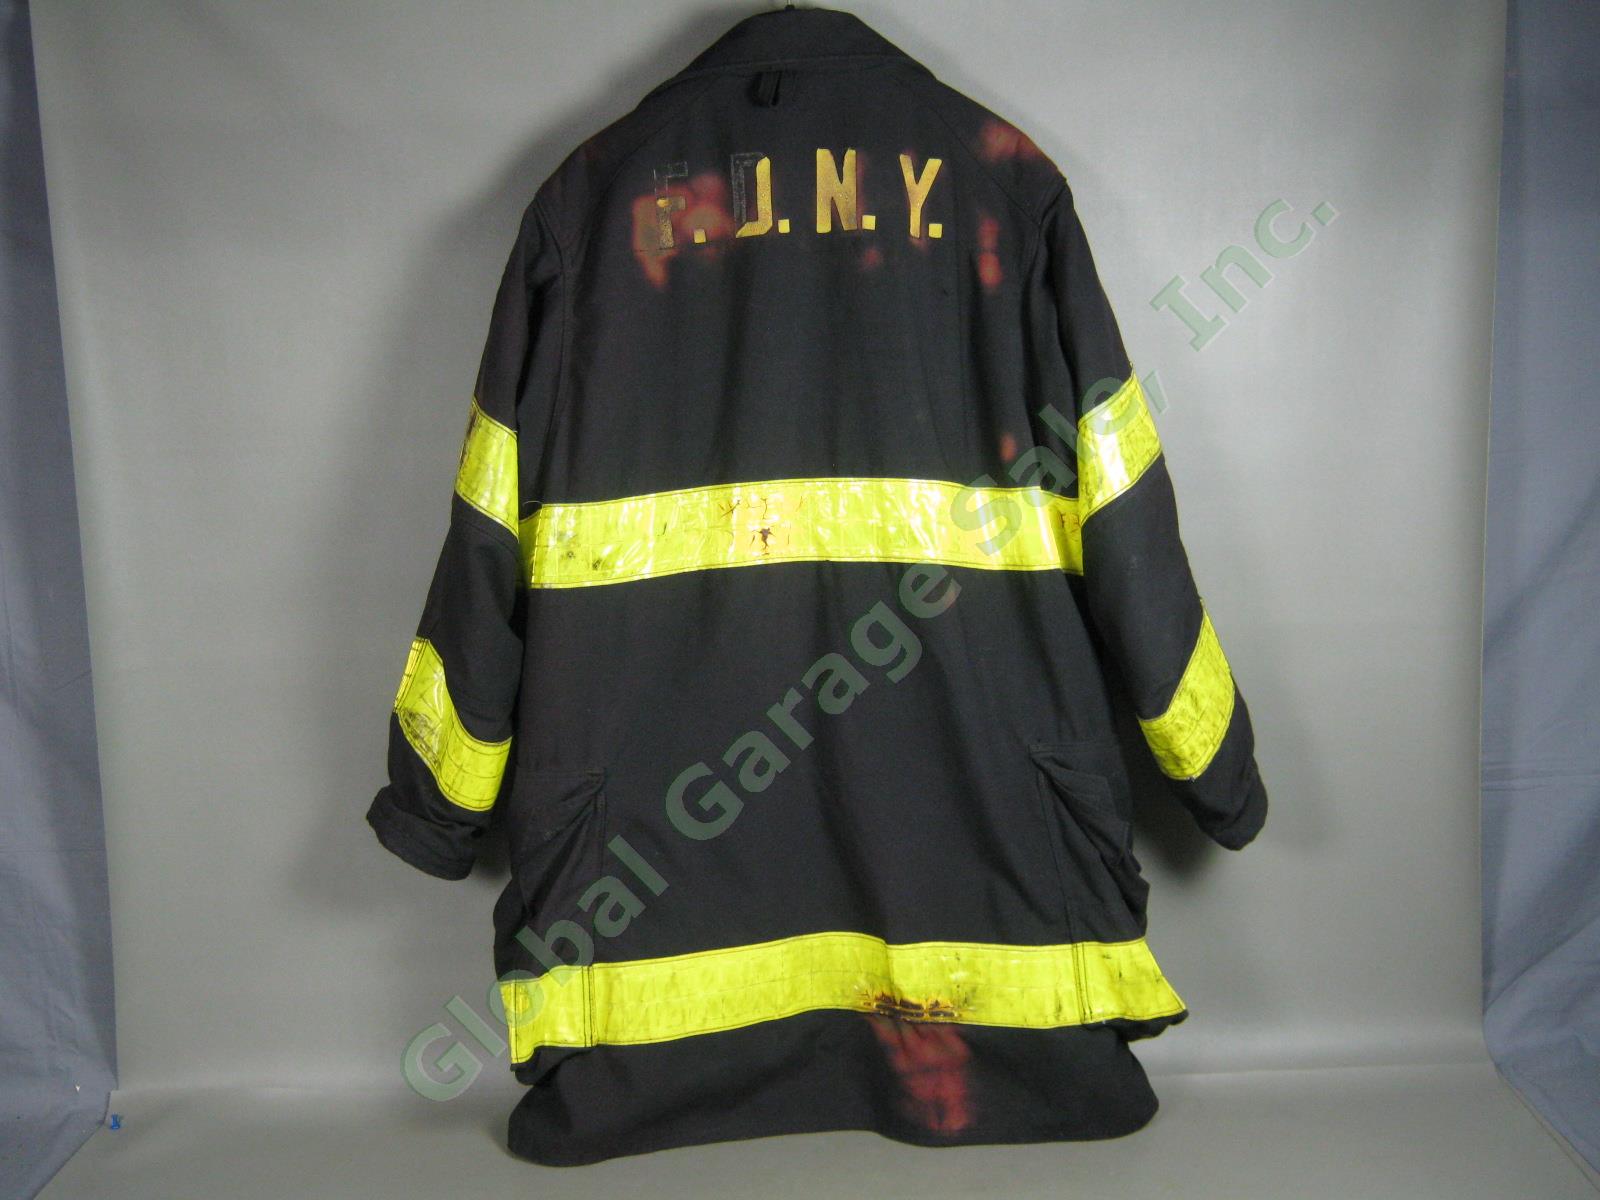 Vtg 1993 Janesville FDNY NY Fire Dept Summer Firefighter Jacket 44/40 Exc Cond! 4